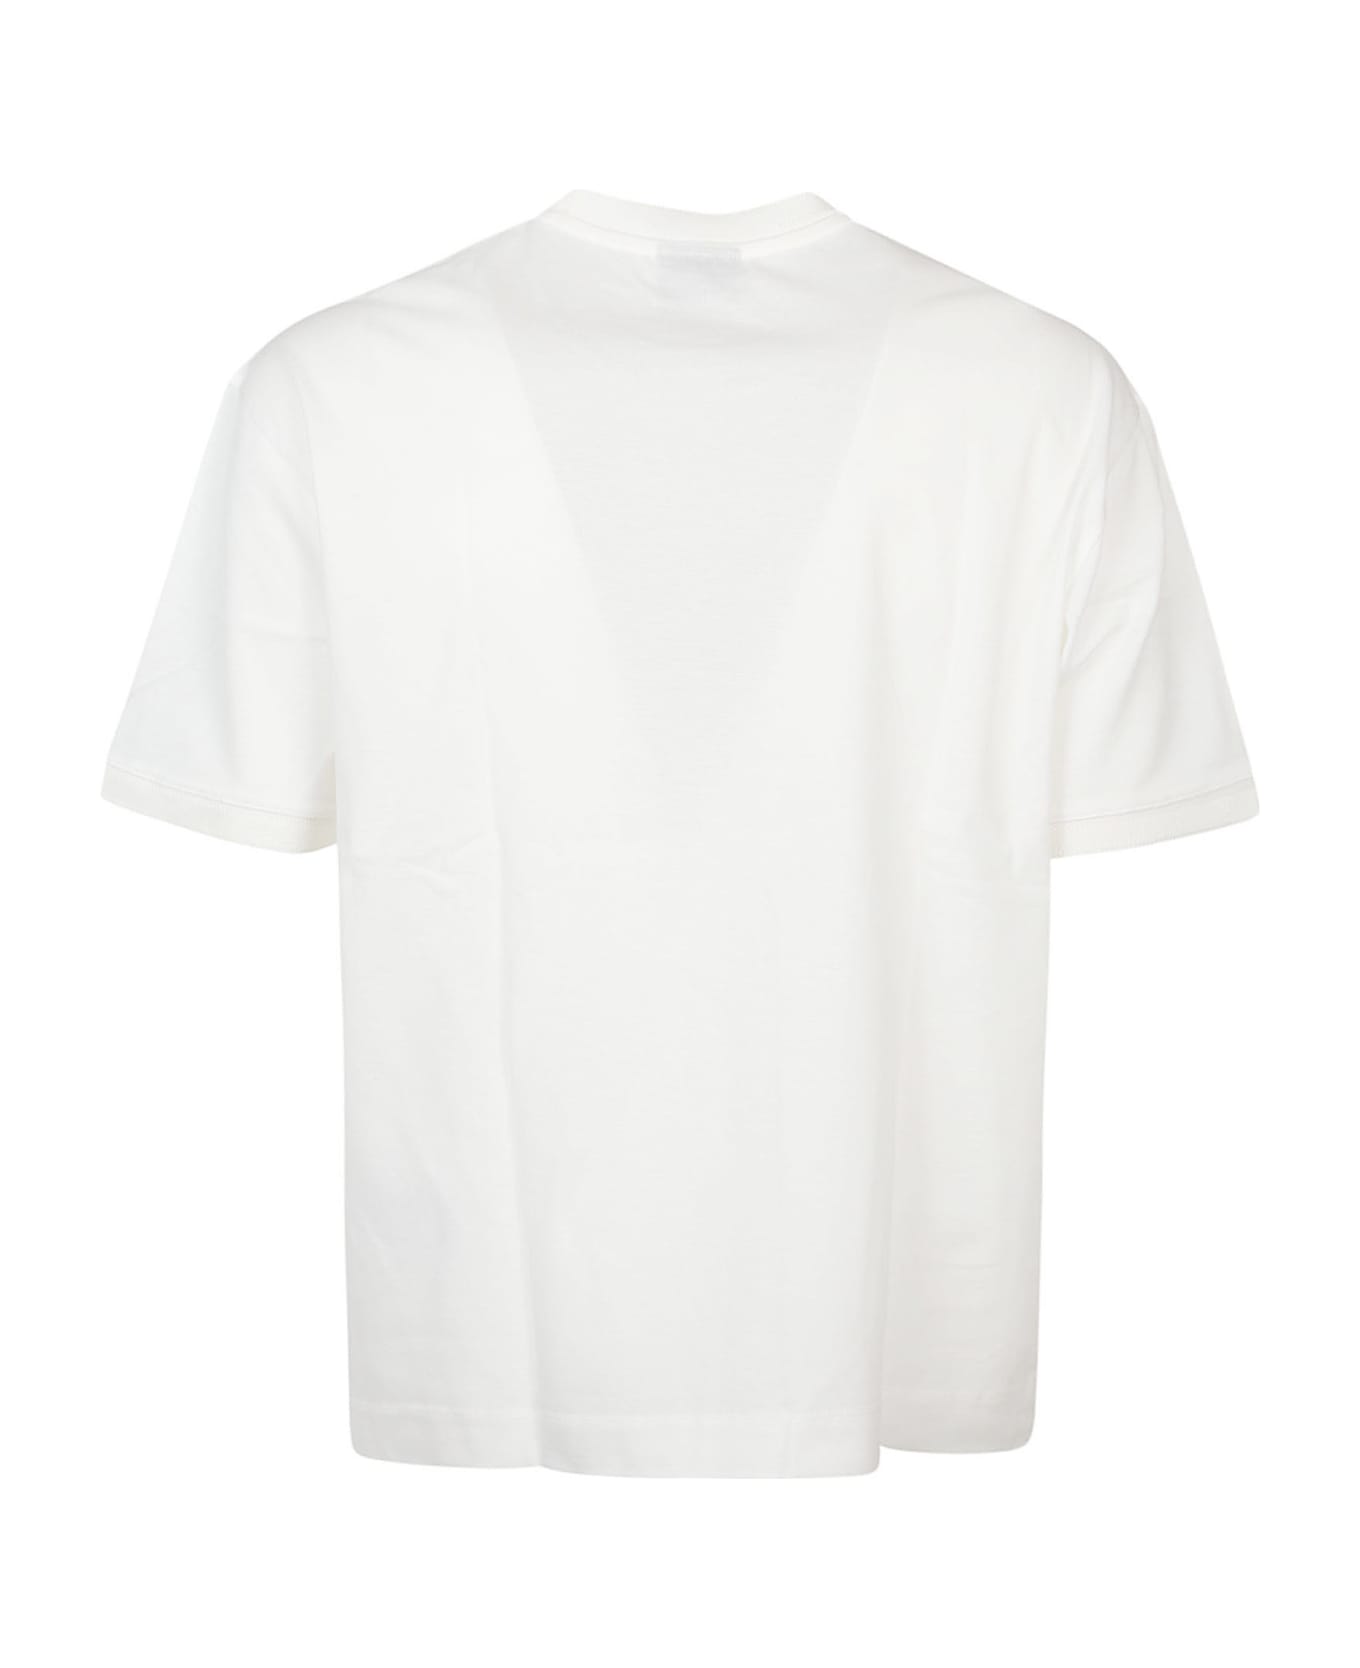 Emporio Armani T-shirt - Bianco Caldo